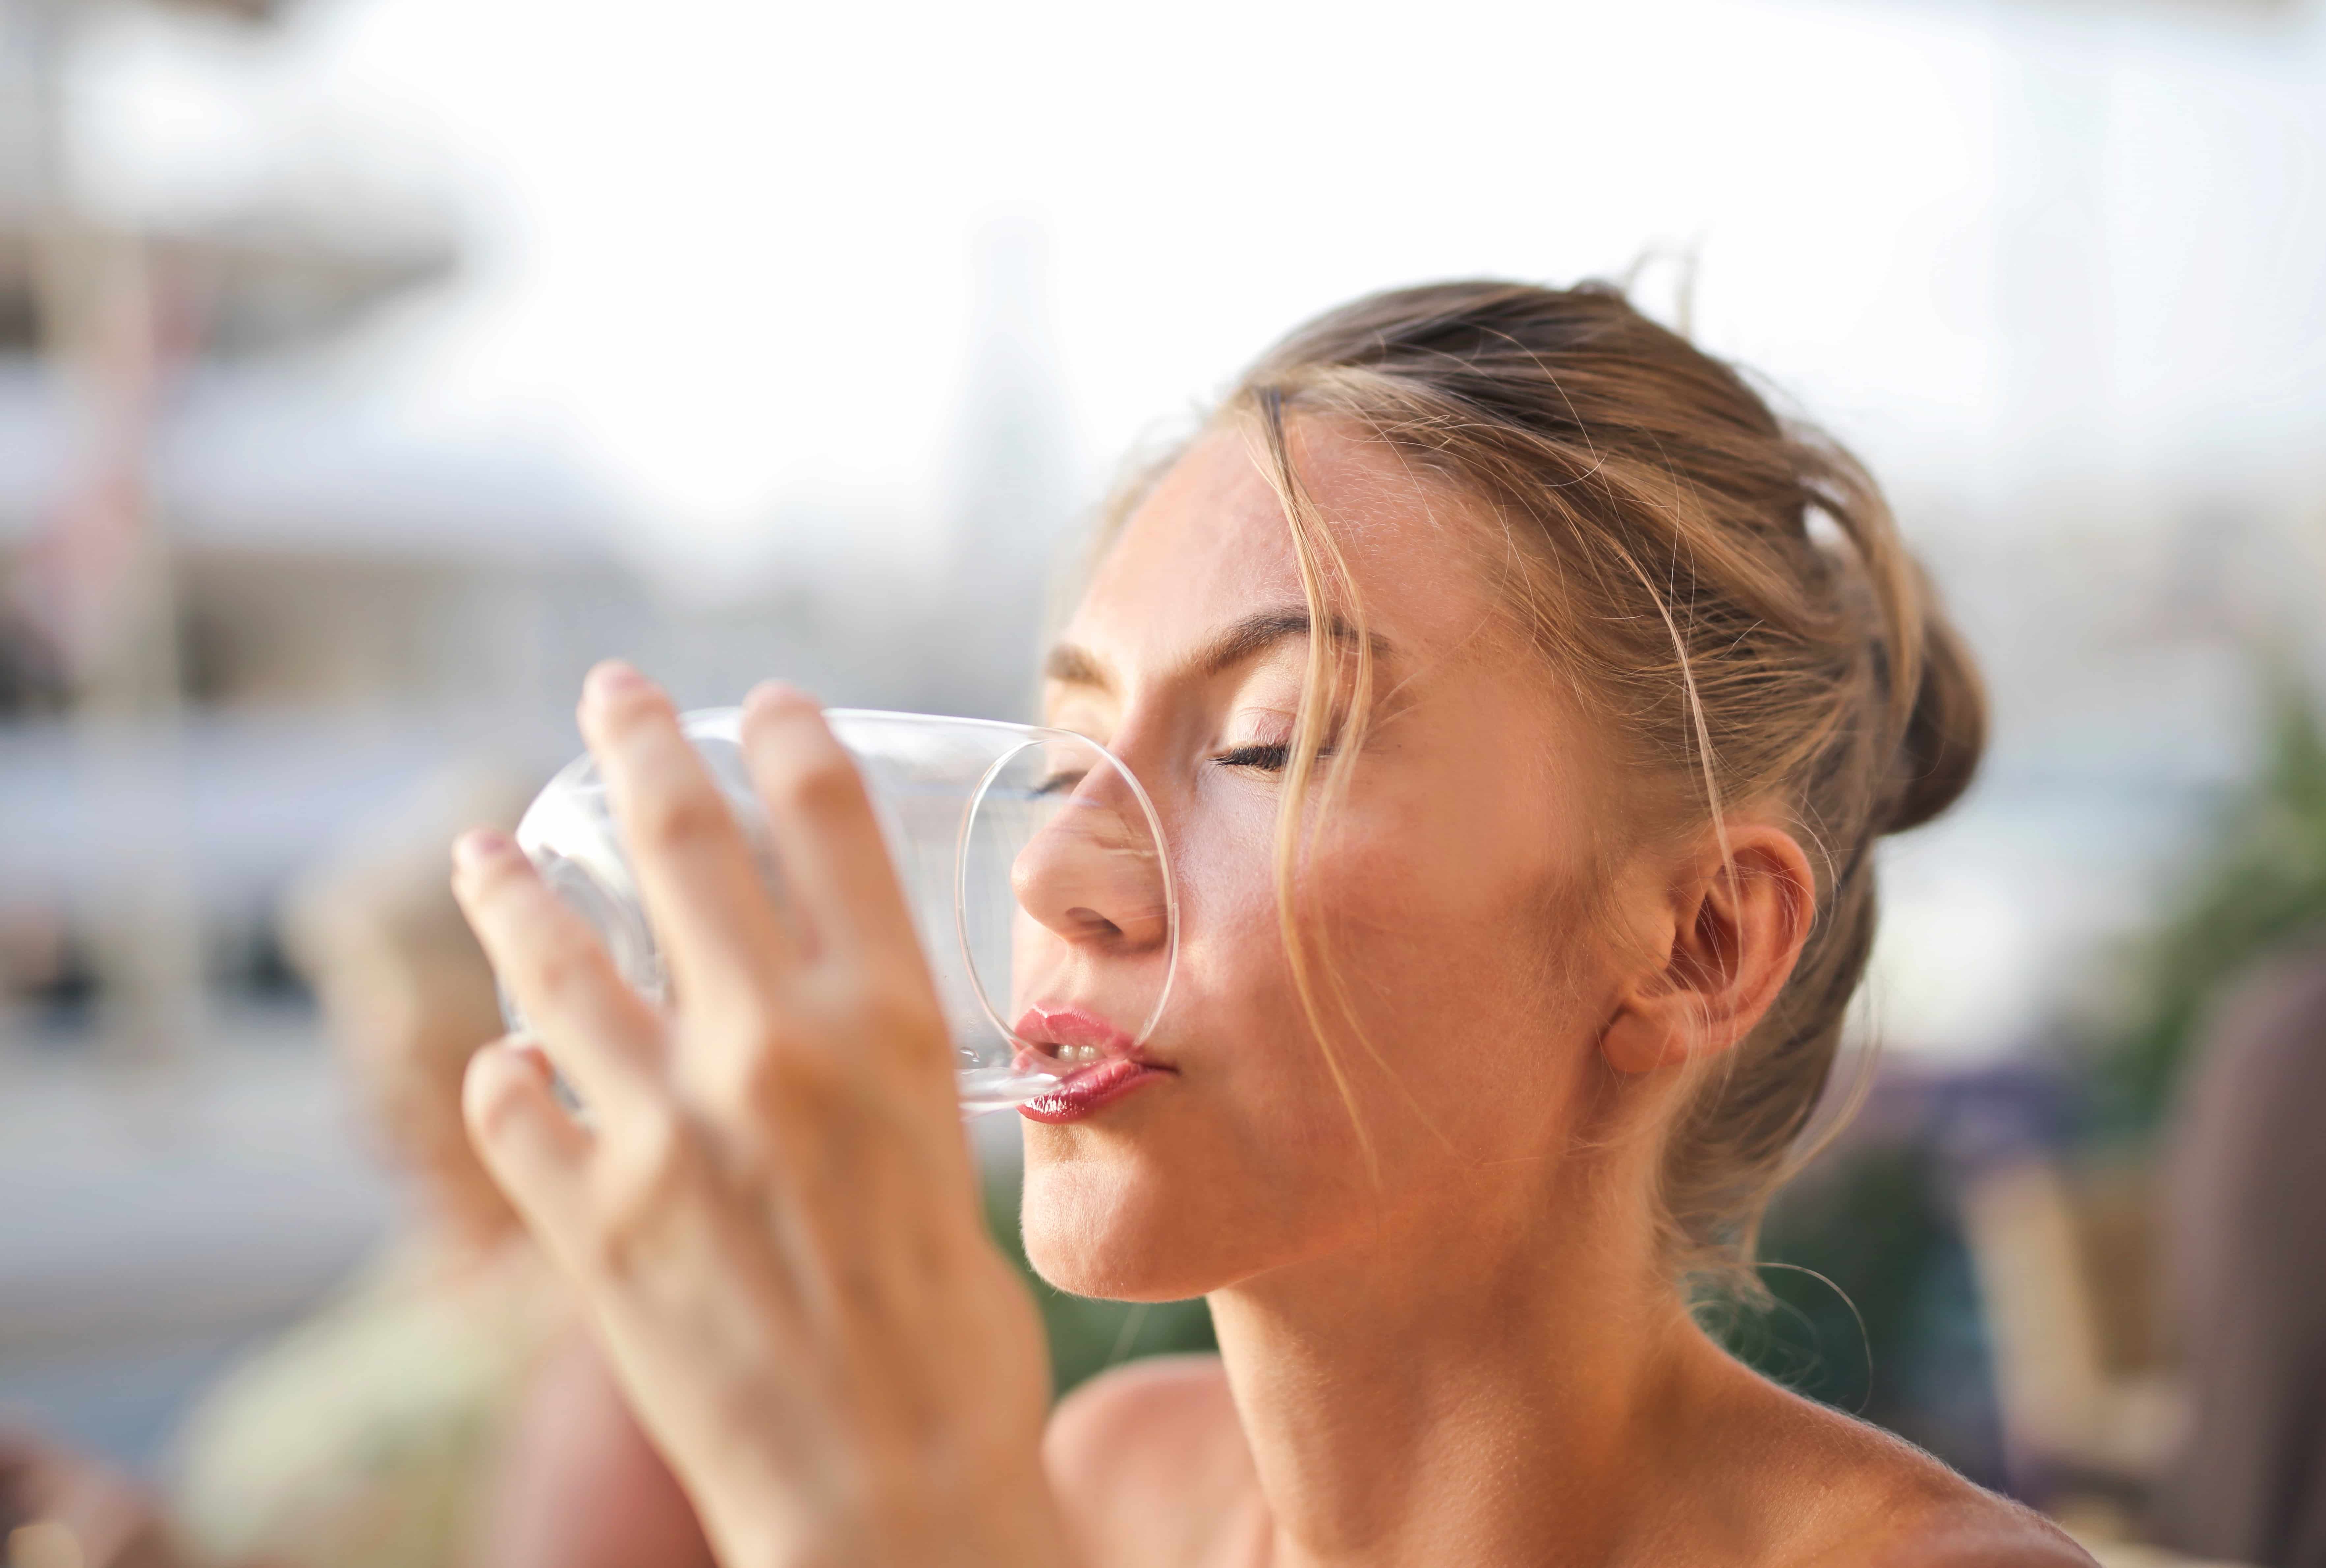 disidratazione: quanto a lungo si può vivere senza acqua?